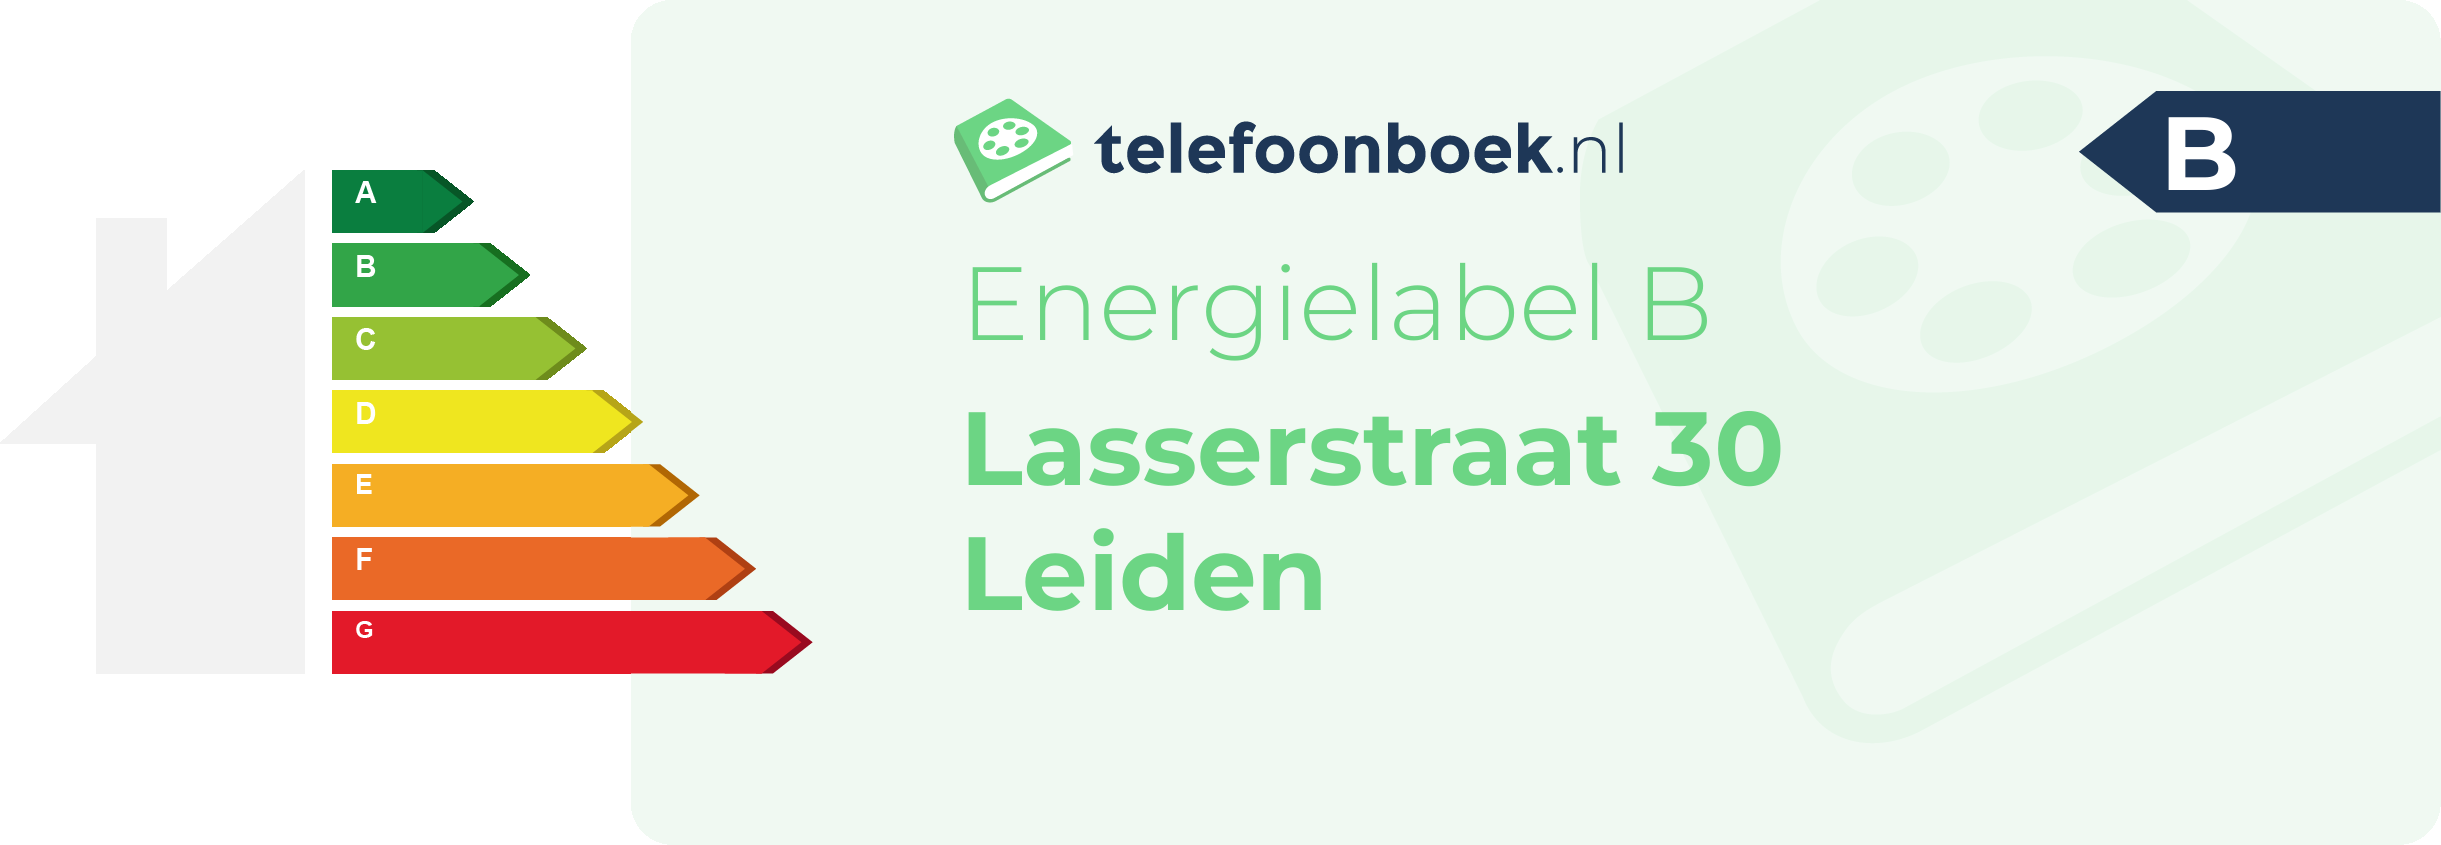 Energielabel Lasserstraat 30 Leiden